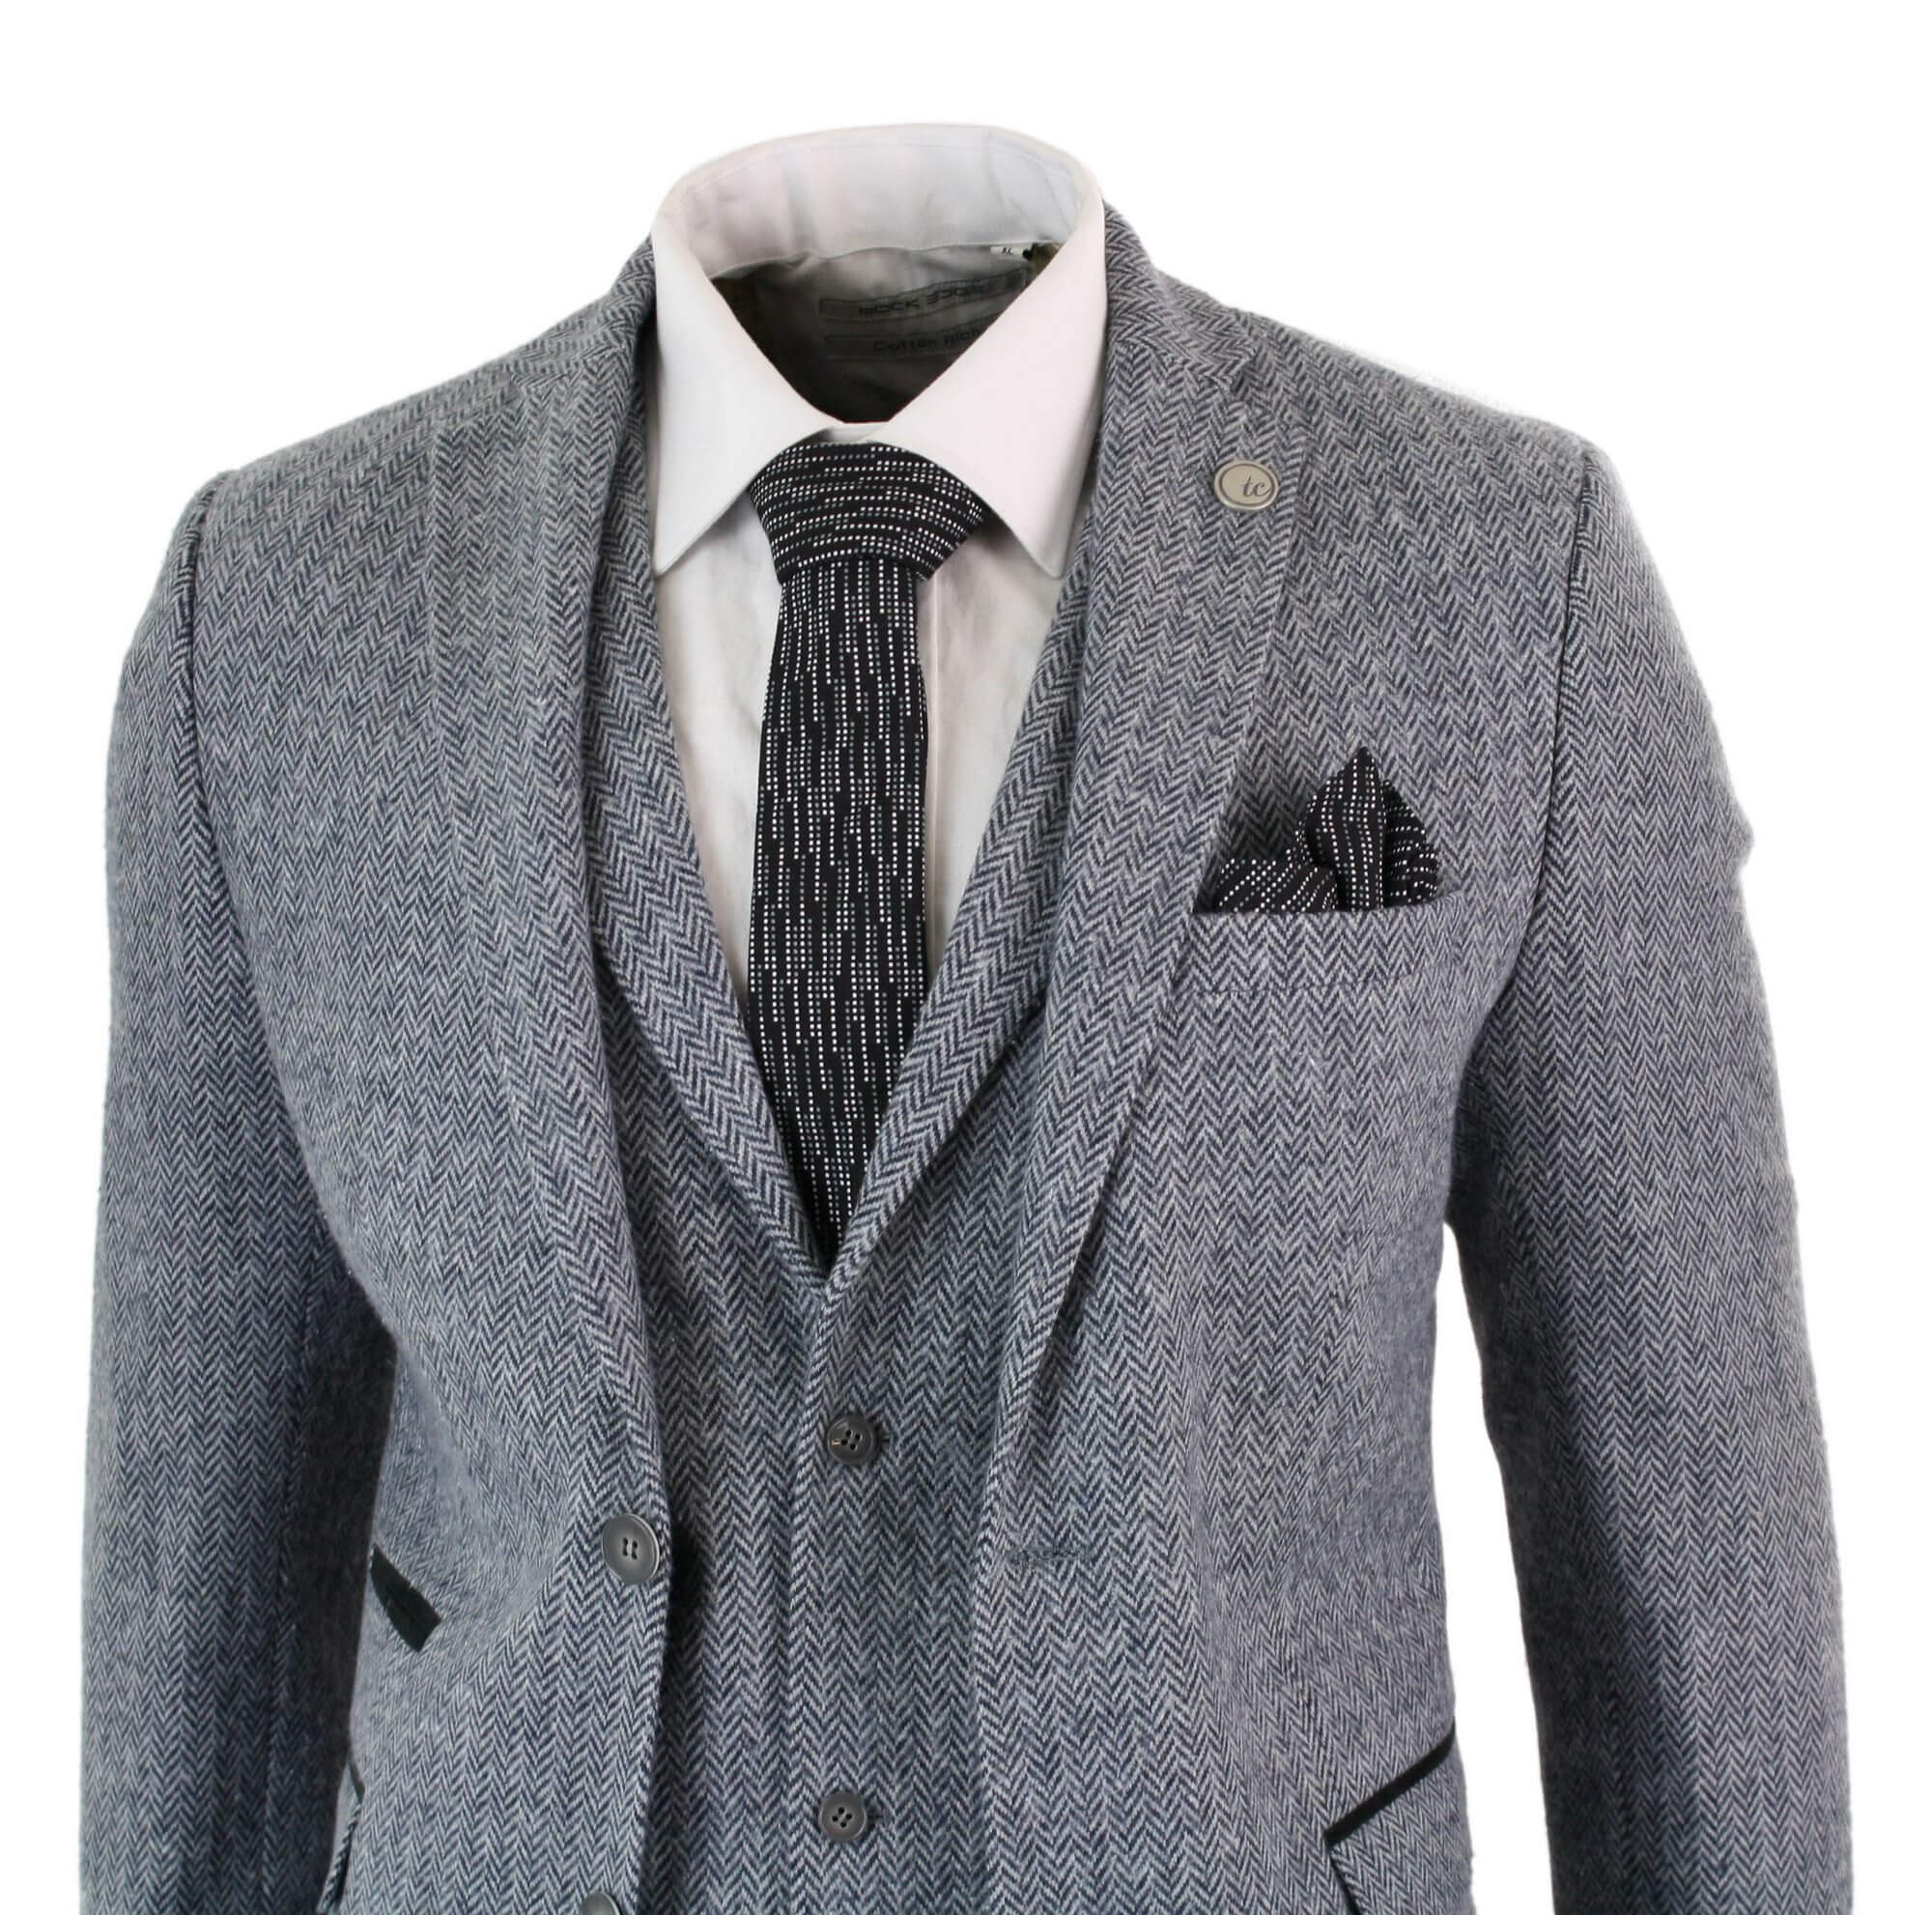 Men's Light Grey 3 Piece Tweed Herringbone Suit - STZ11: Buy Online